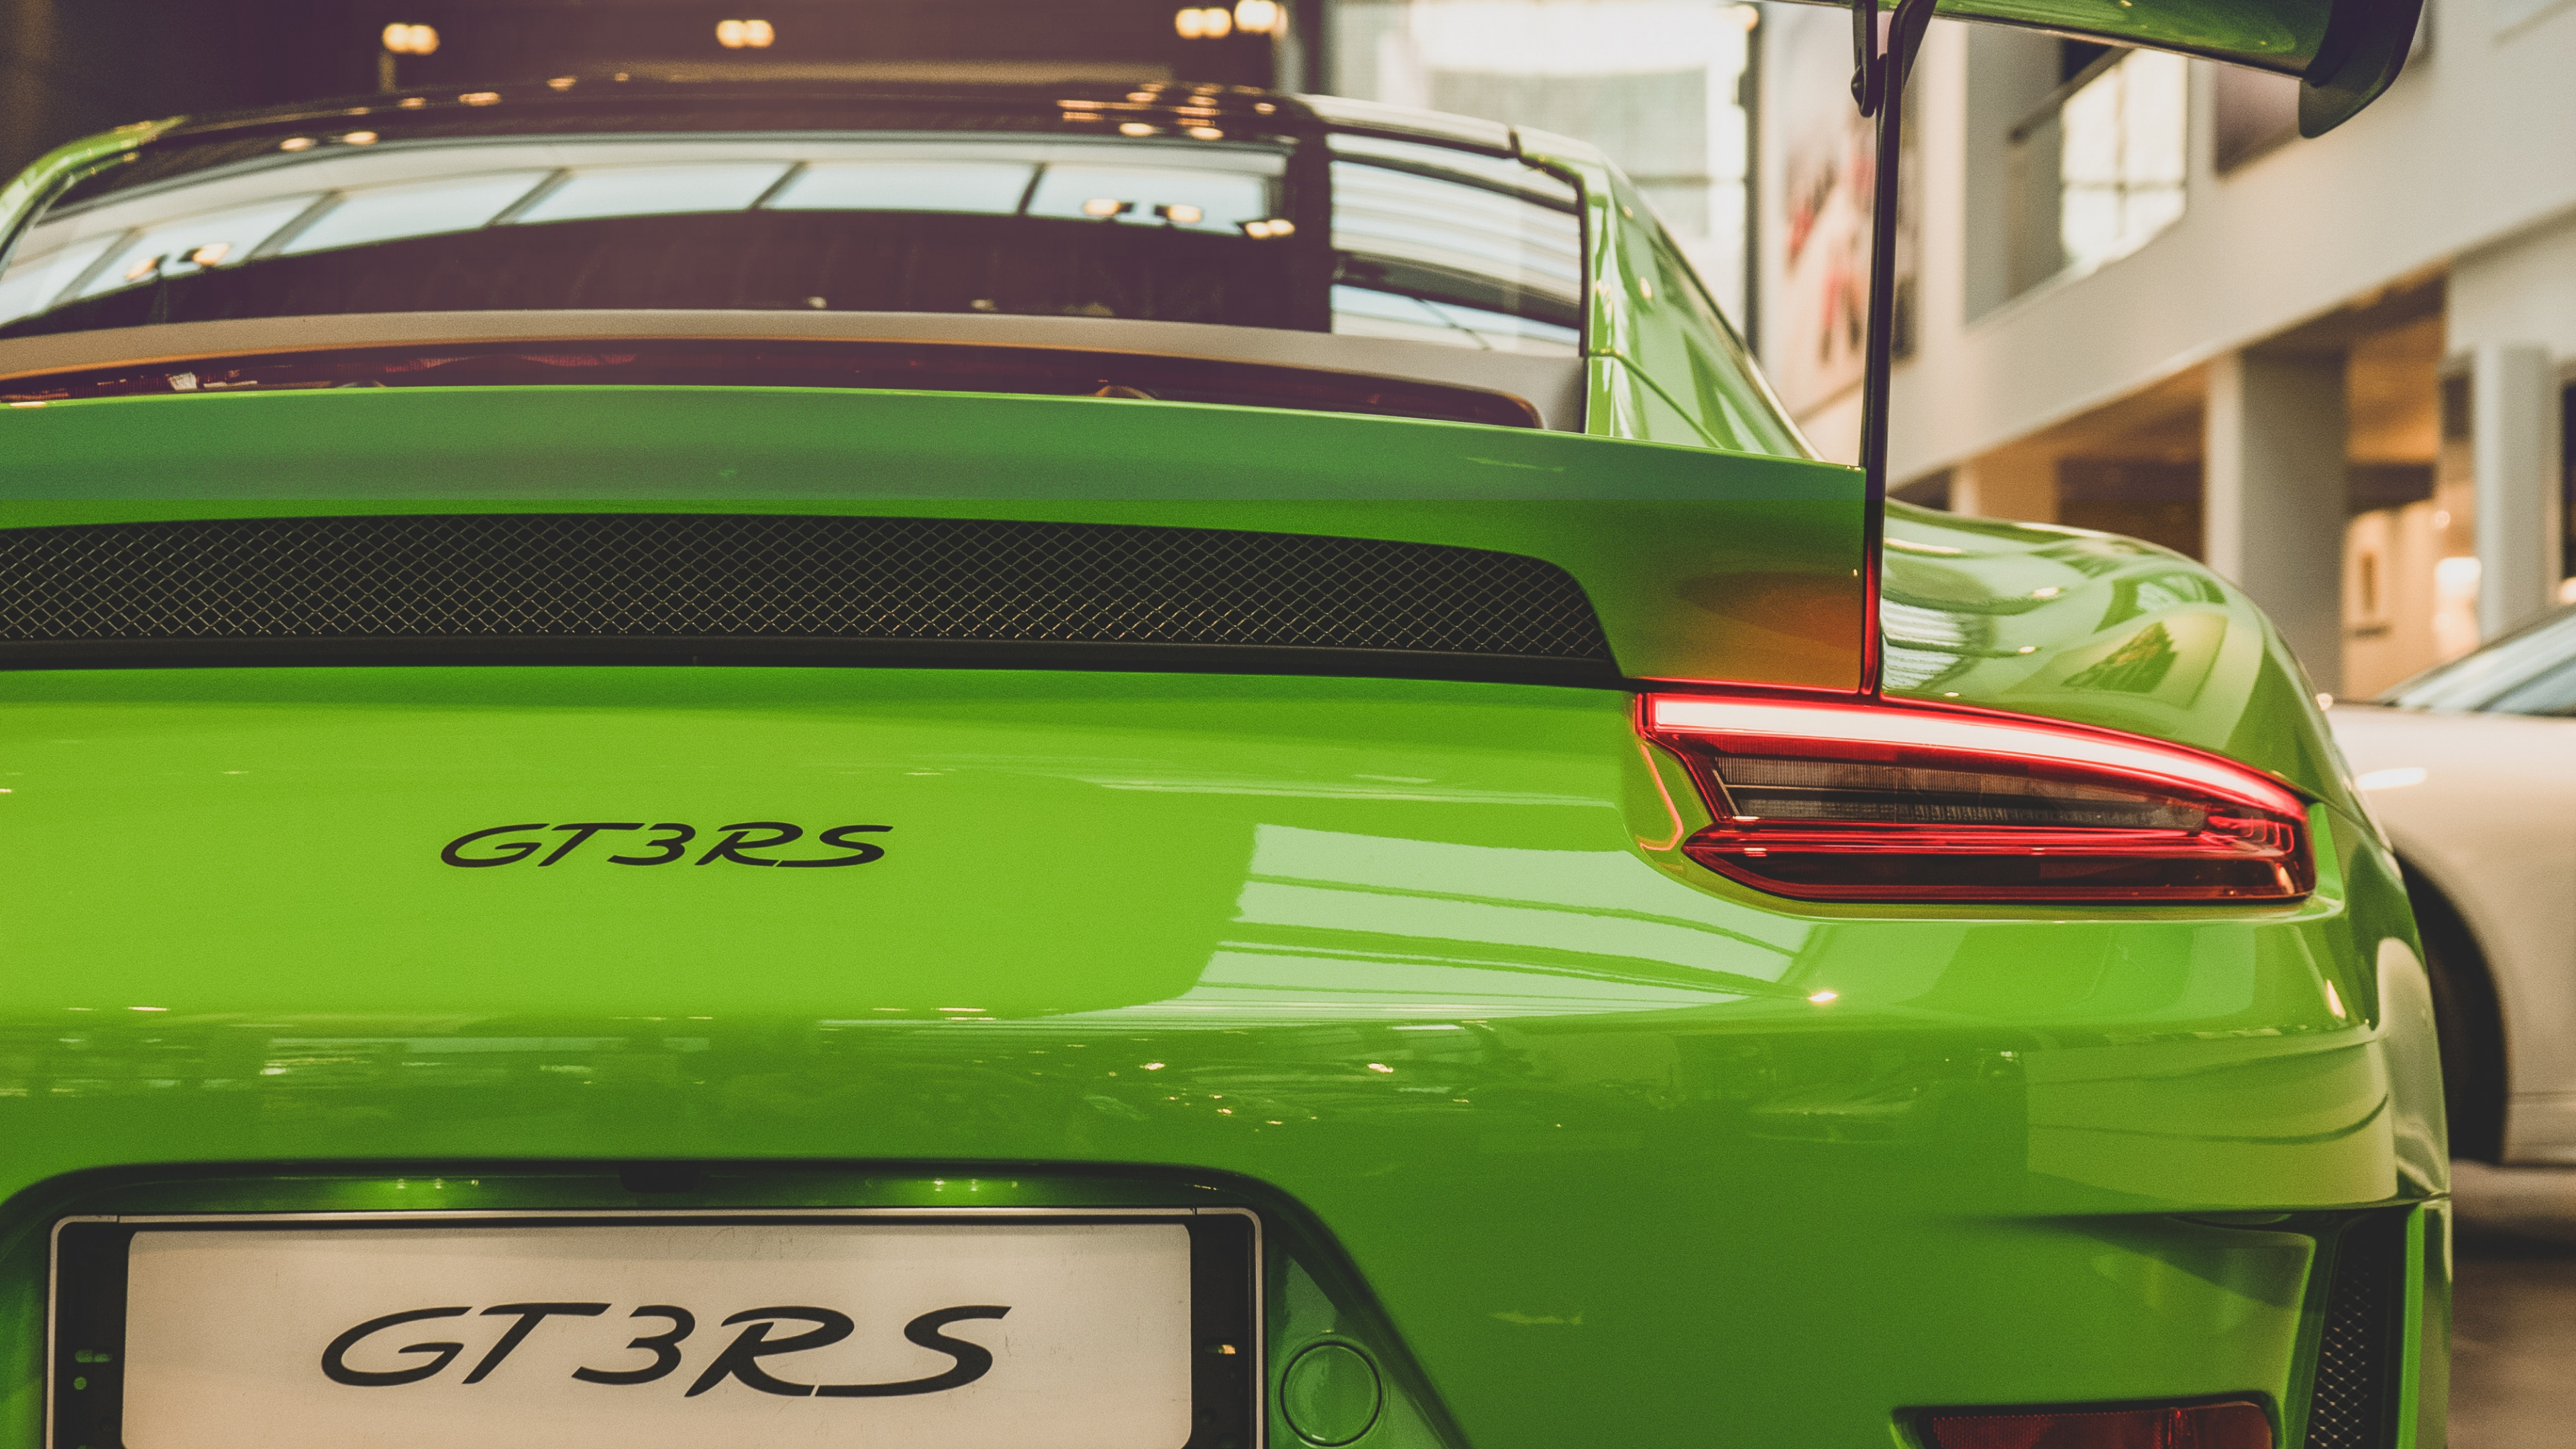 Porsche 911 Verde Estacionado Frente al Edificio. Wallpaper in 3840x2160 Resolution